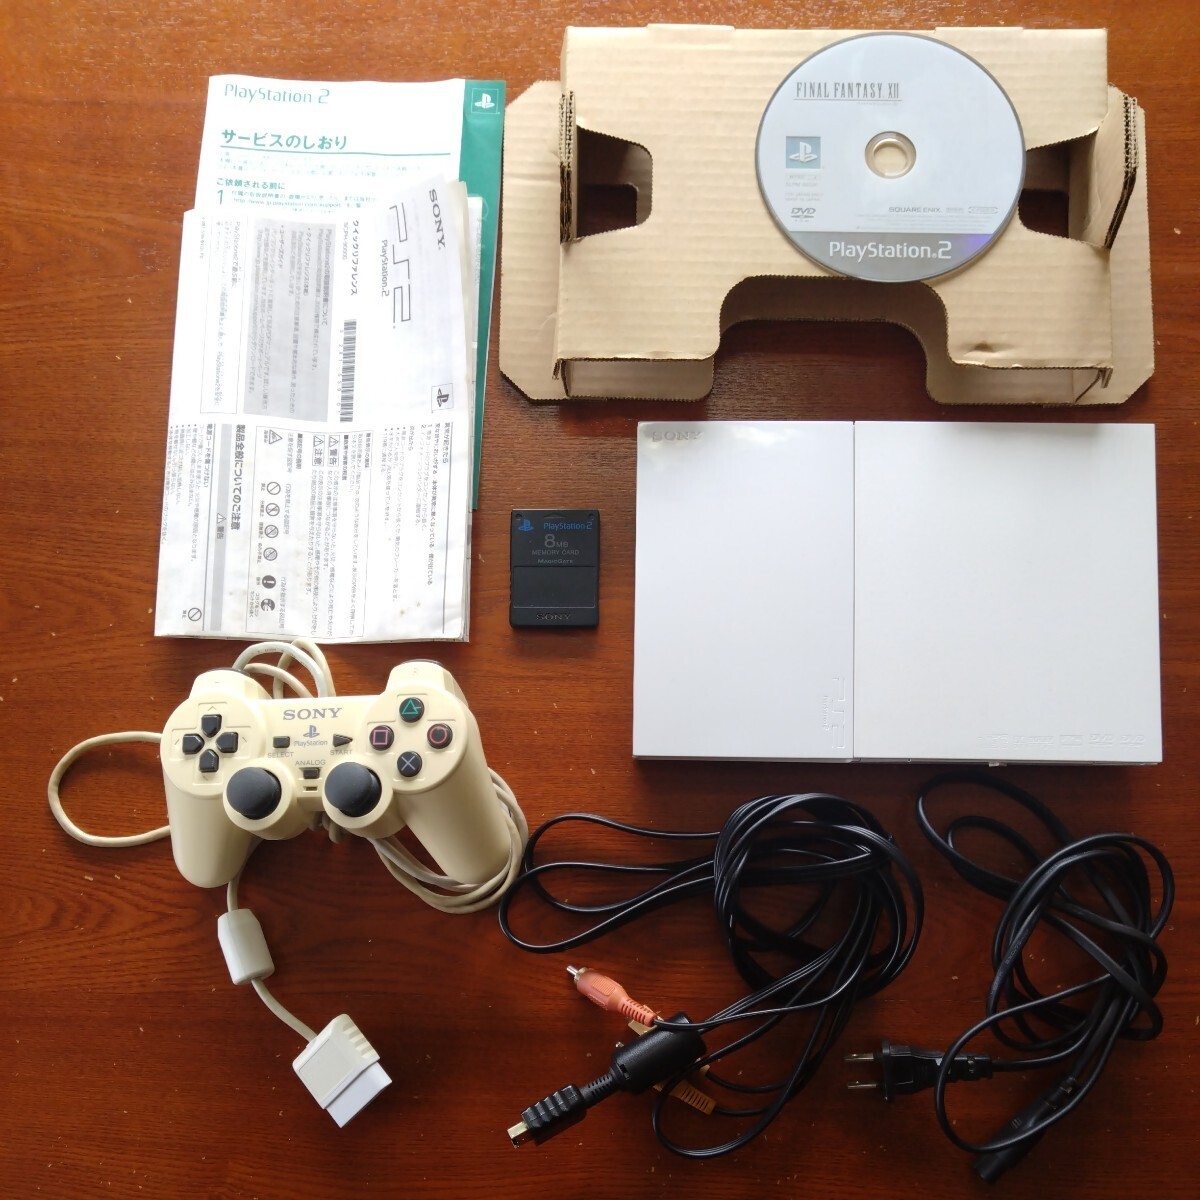 【漂白クリーニング済み】【タバコ臭有り】PS2 本体 SCPH-90000 セラミック ホワイト PlayStation2 ソフト メモリーカード付き